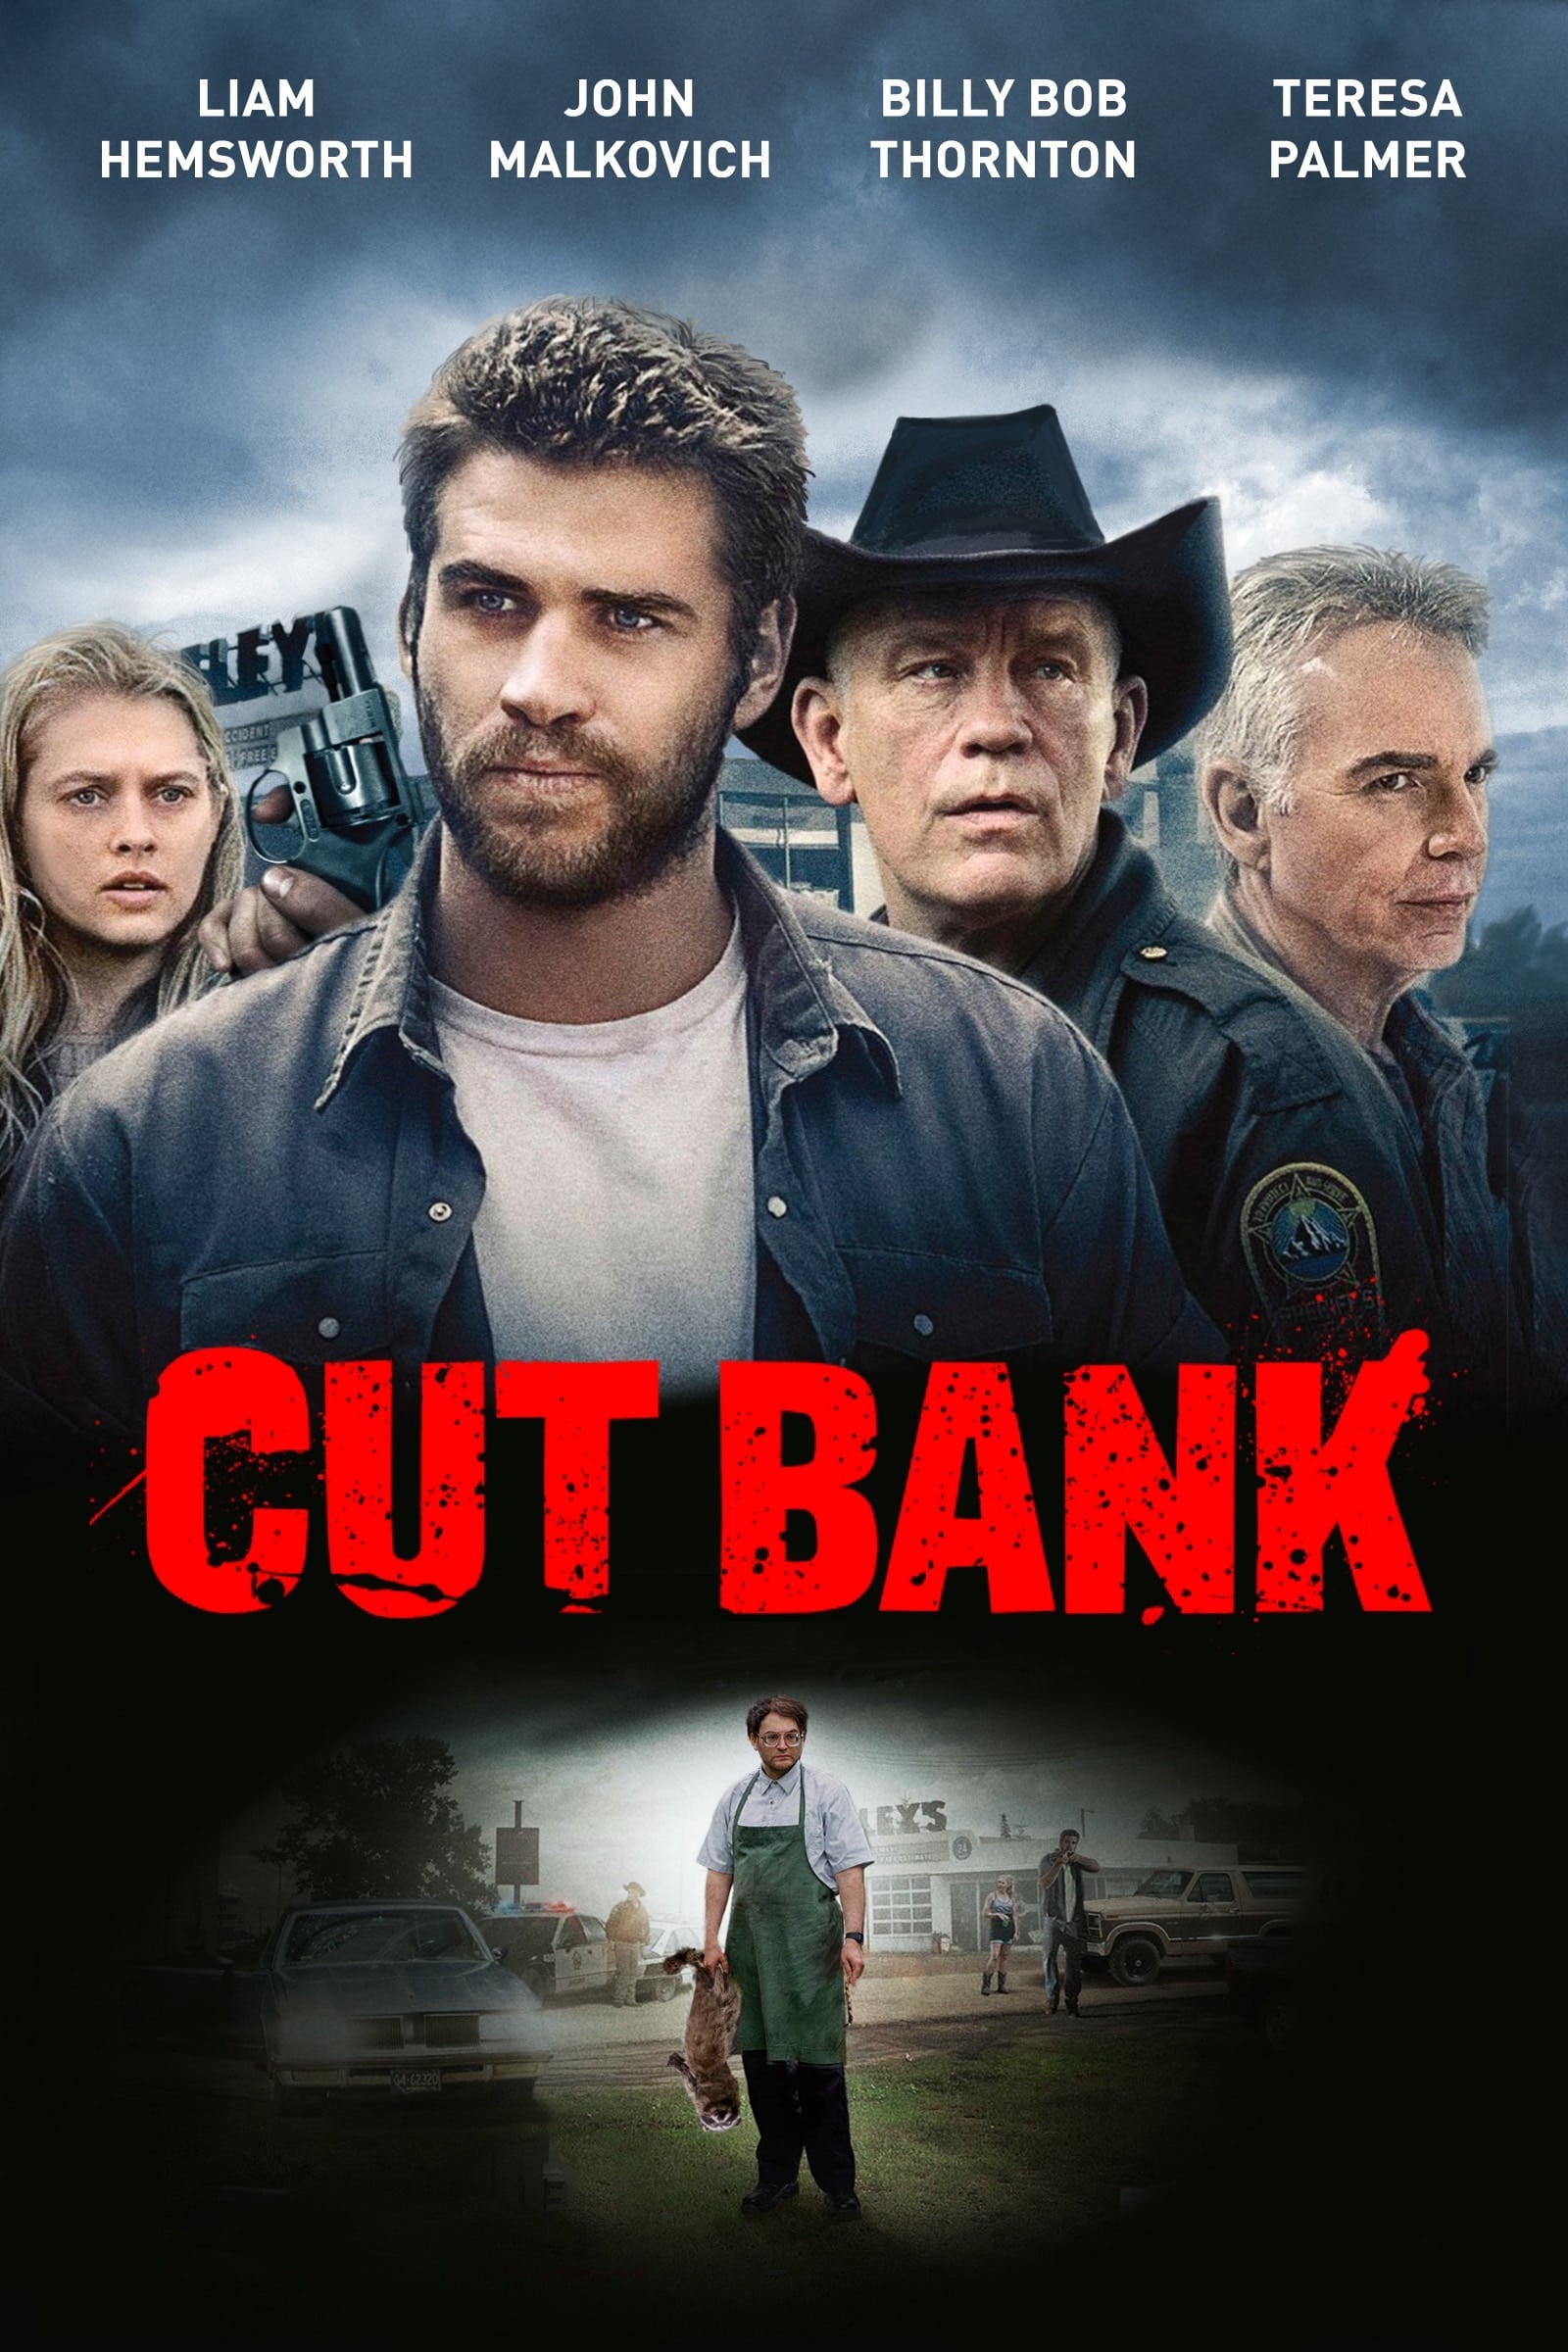 دانلود صوت دوبله فیلم Cut Bank